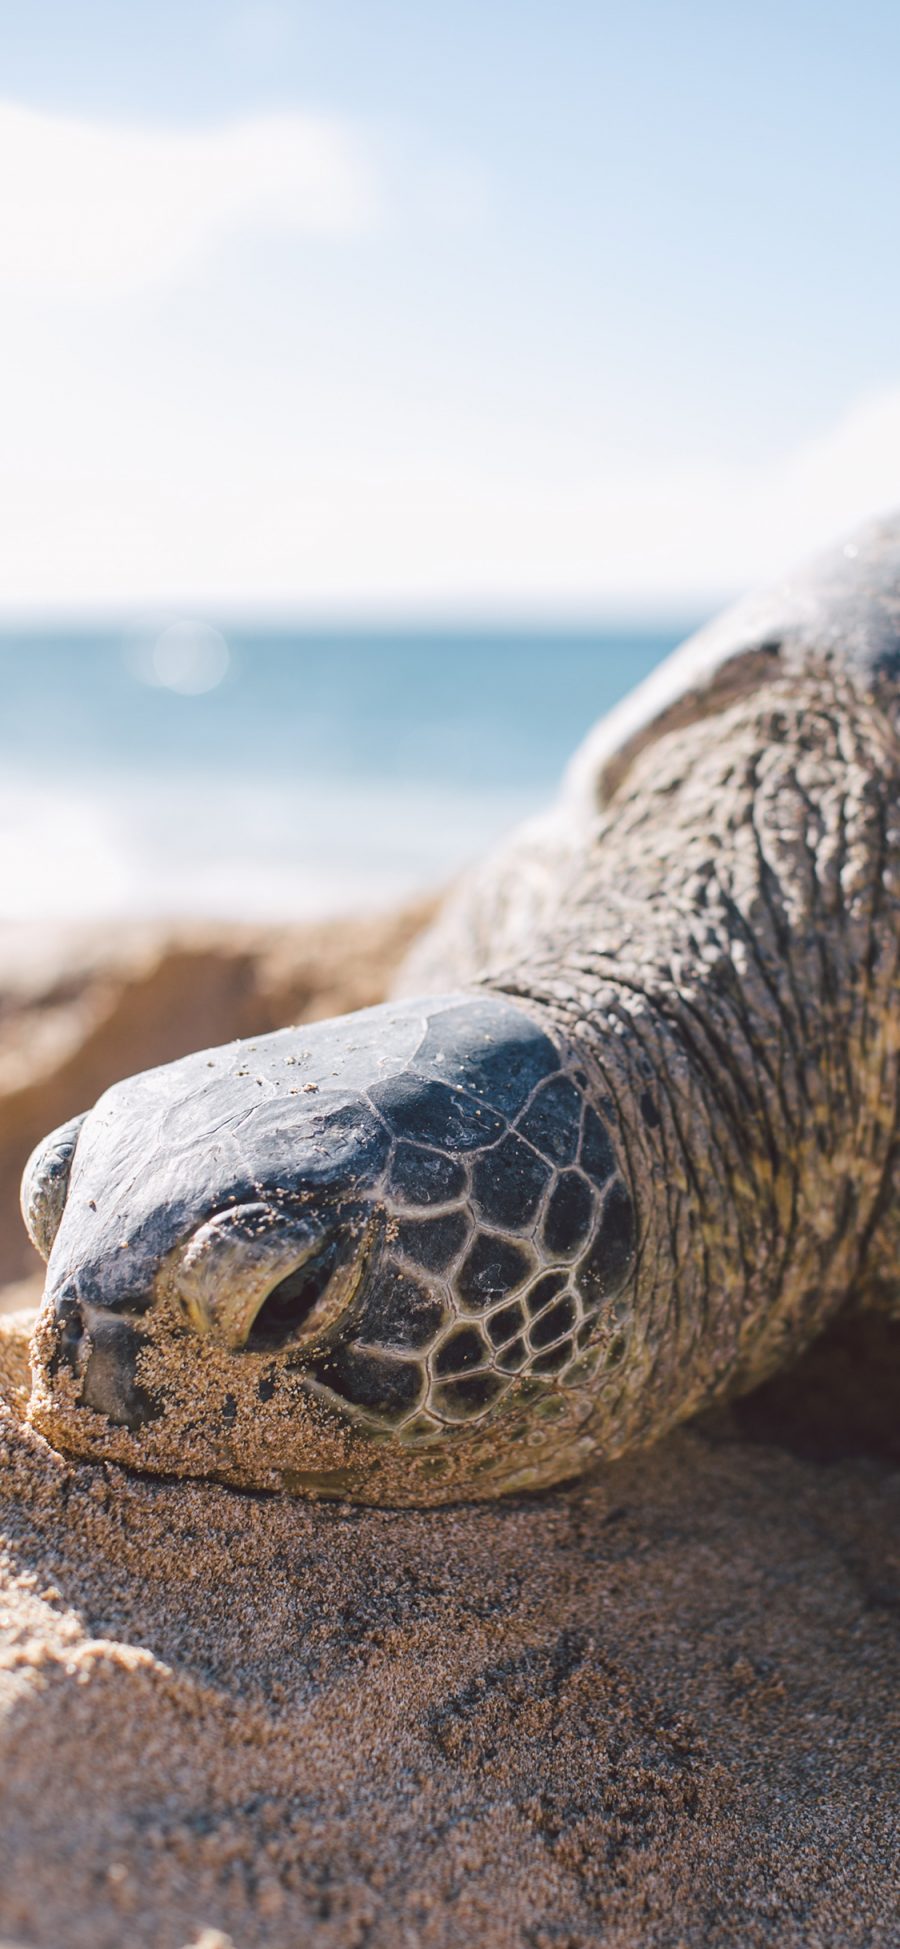 [2436×1125]乌龟 沙滩 海龟 长寿 苹果手机壁纸图片